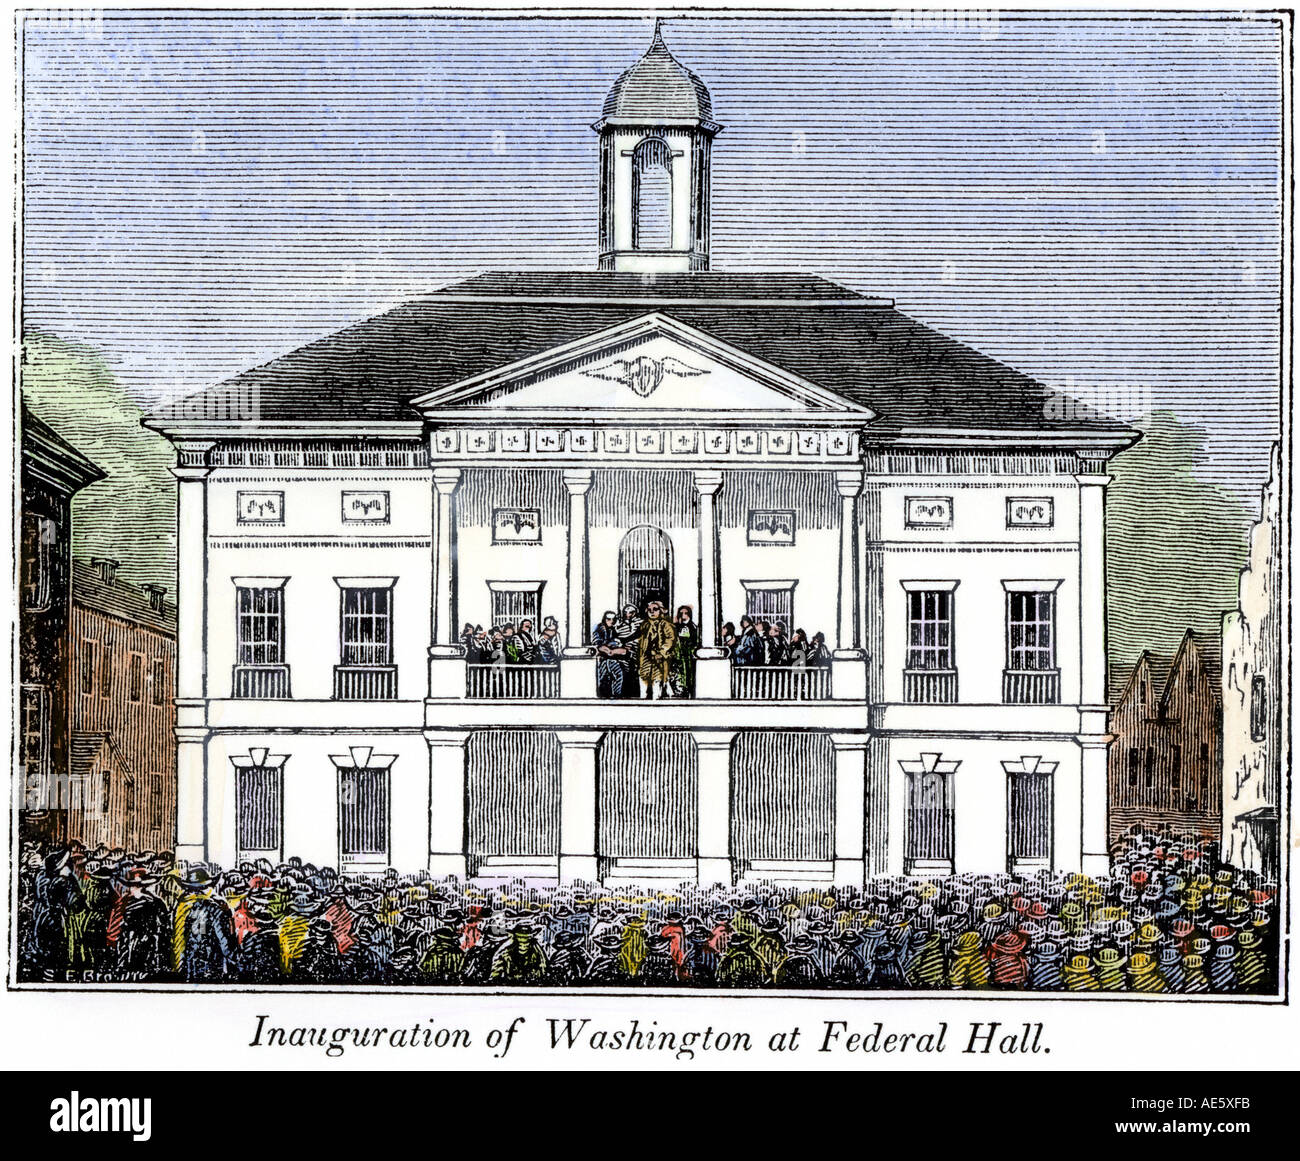 Federal Hall New York lors de l'inauguration de George Washington comme premier président des Etats-Unis, 1789. À la main, gravure sur bois Banque D'Images